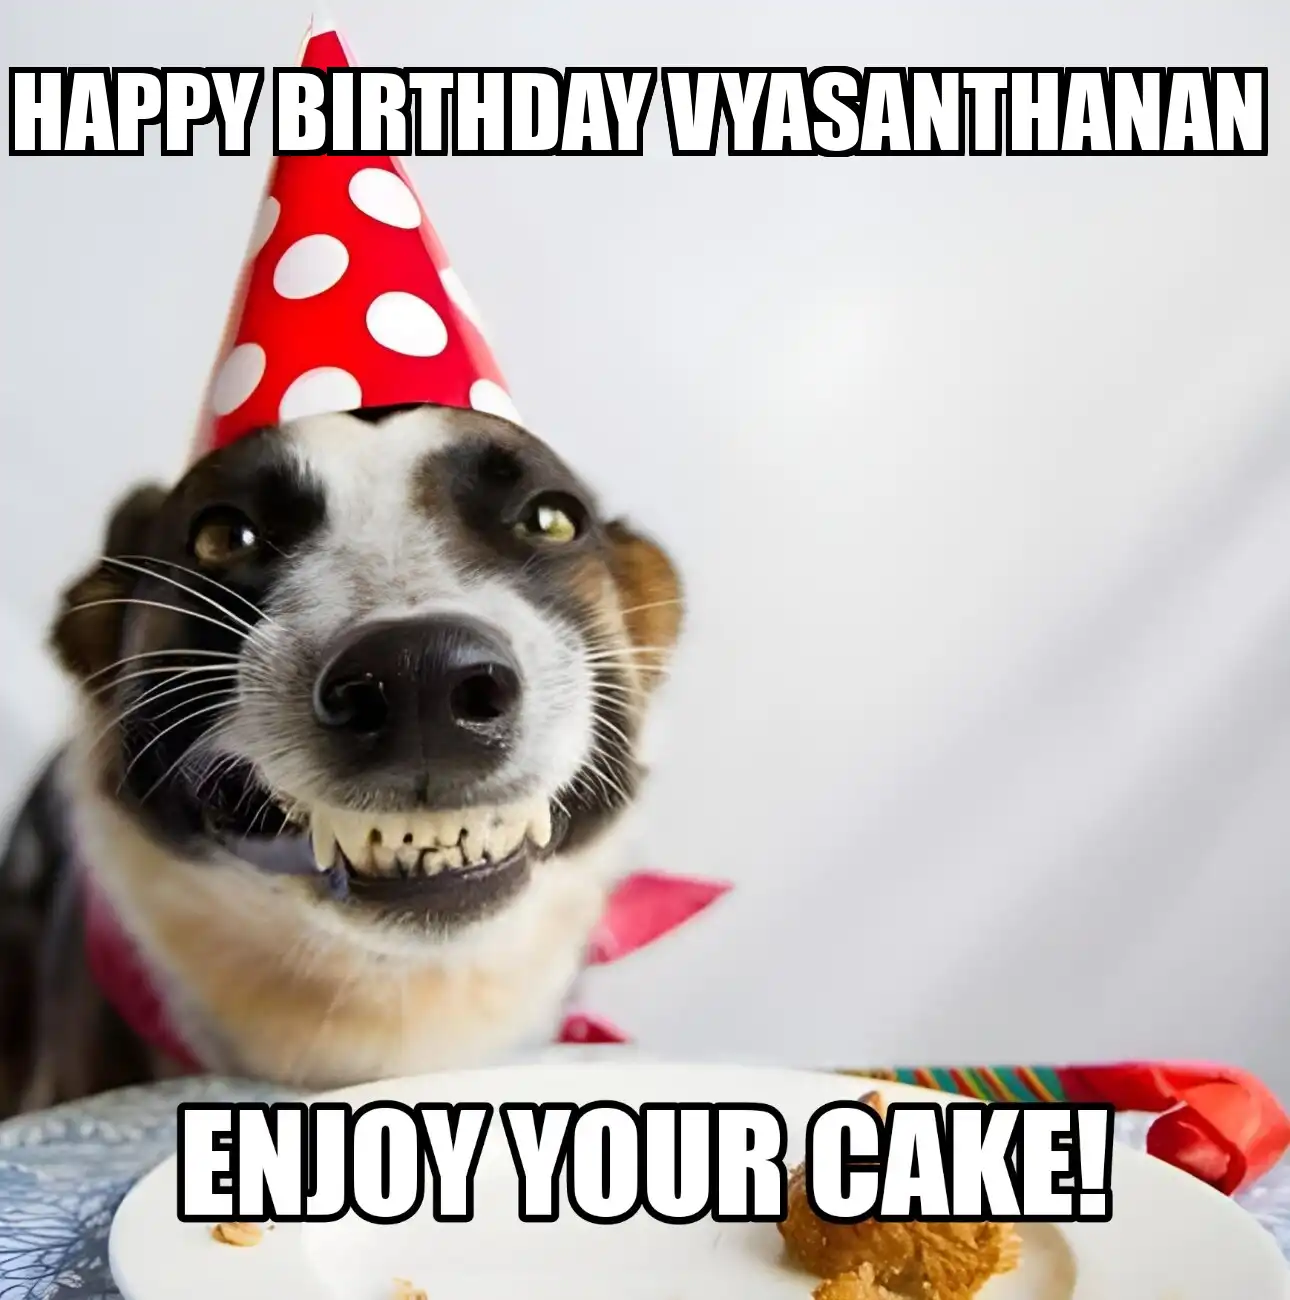 Happy Birthday Vyasanthanan Enjoy Your Cake Dog Meme